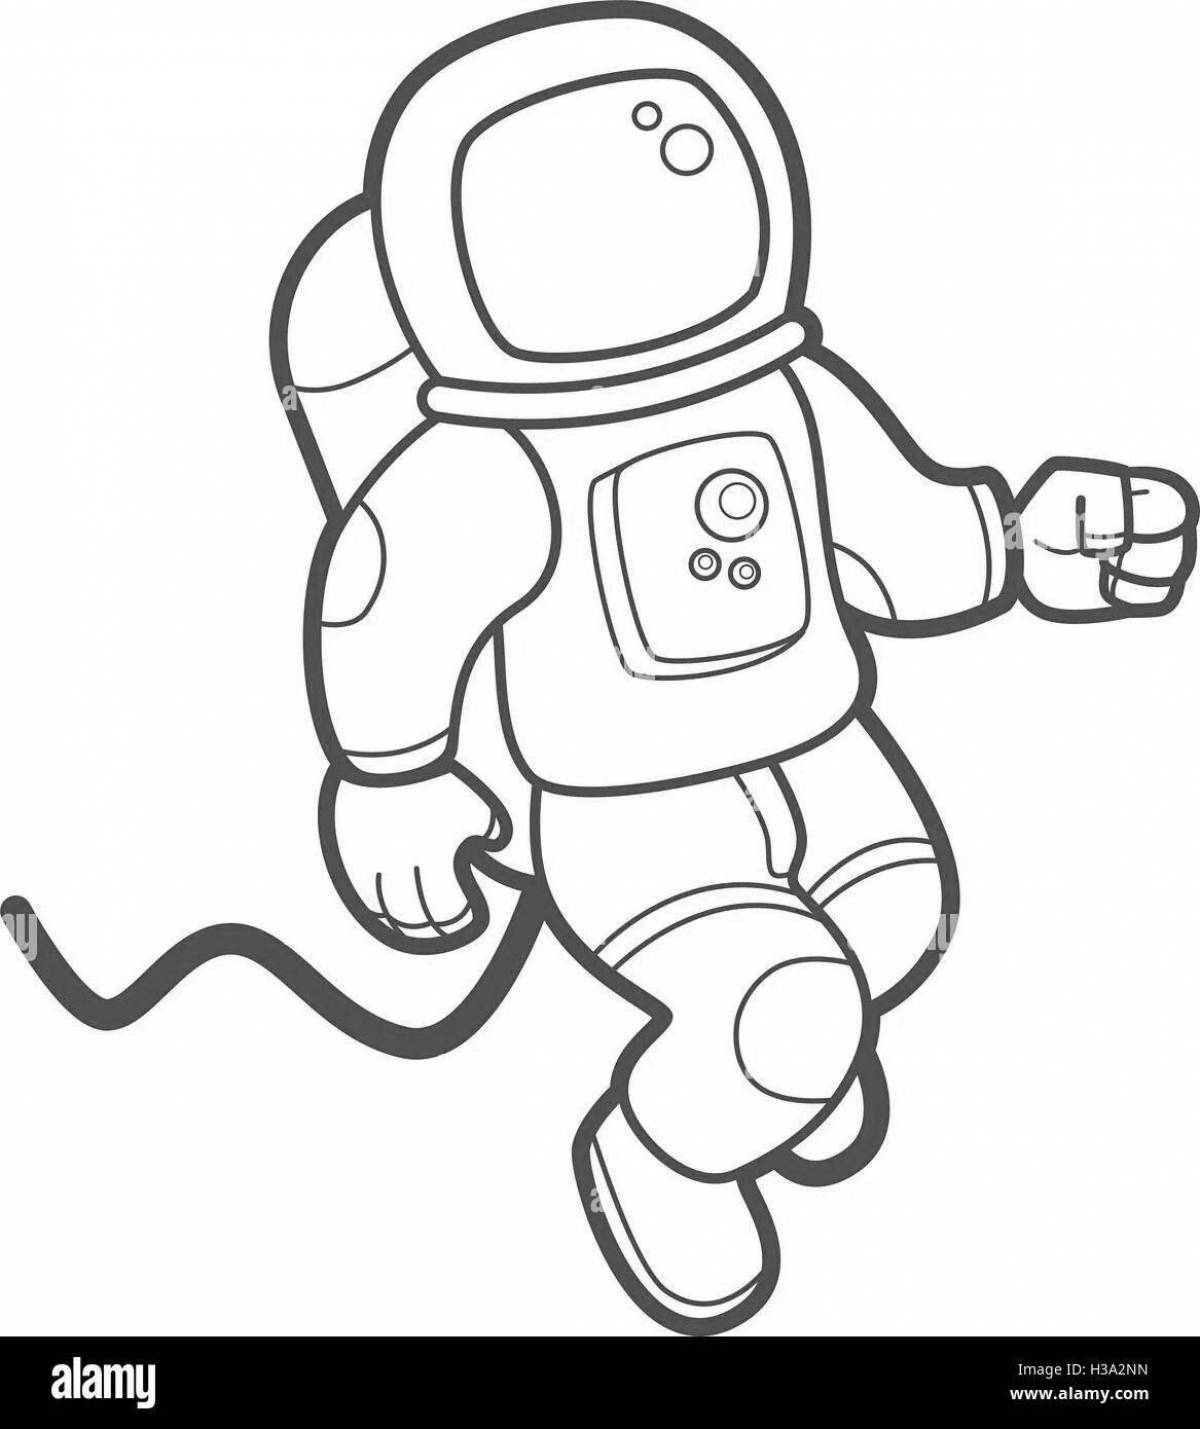 Скафандр рисунок для детей. Космонавт раскраска. Раскраска космонавт в скафандре. Космонавт рисунок раскраска. Рисунок ребенка 2 класса карандашом - человек в скафандре.